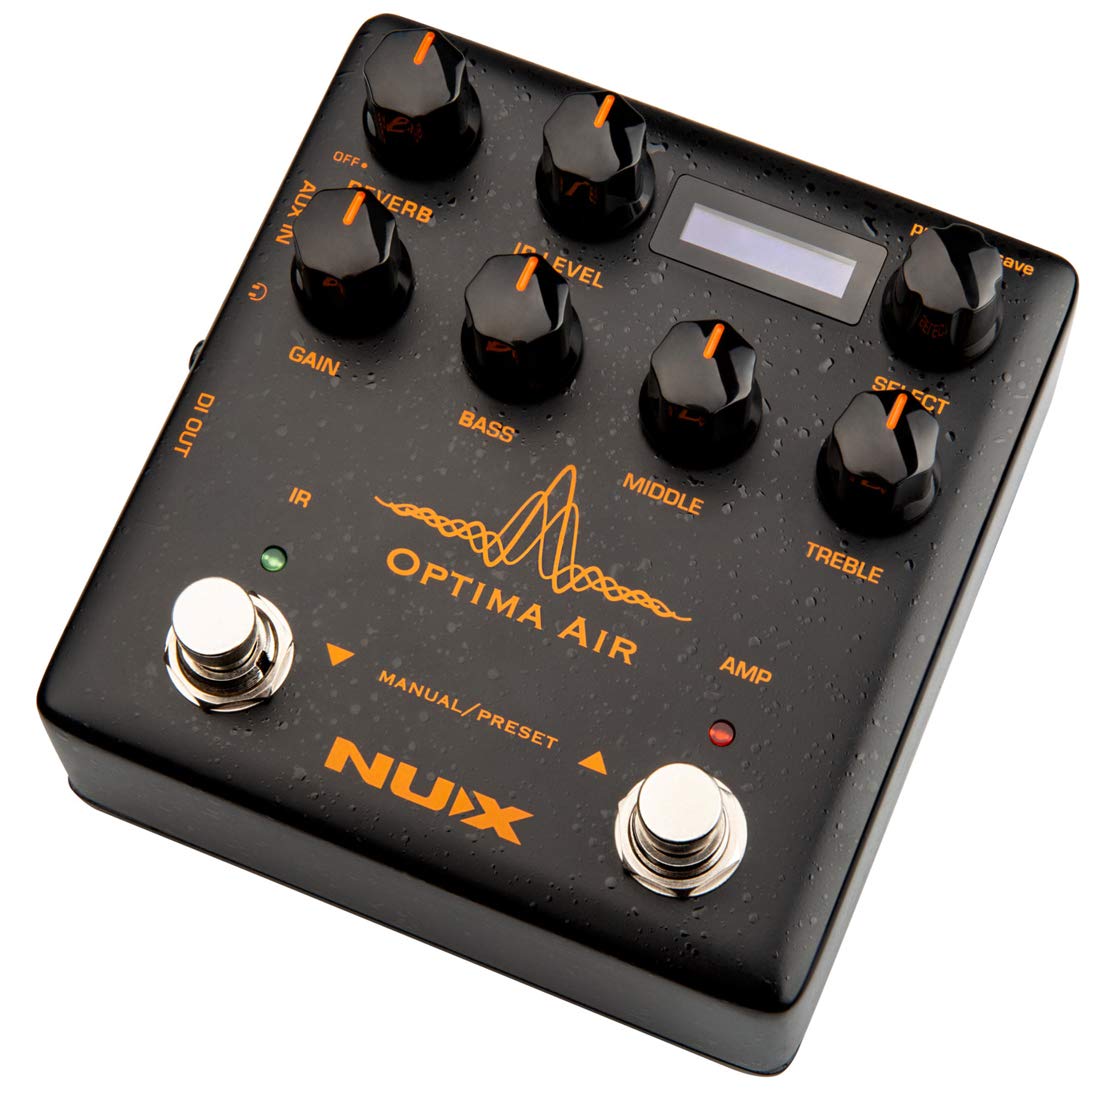 NUX Optima Air 双开关原声吉他模拟器，带前置放大器、红外加载器、捕获模式